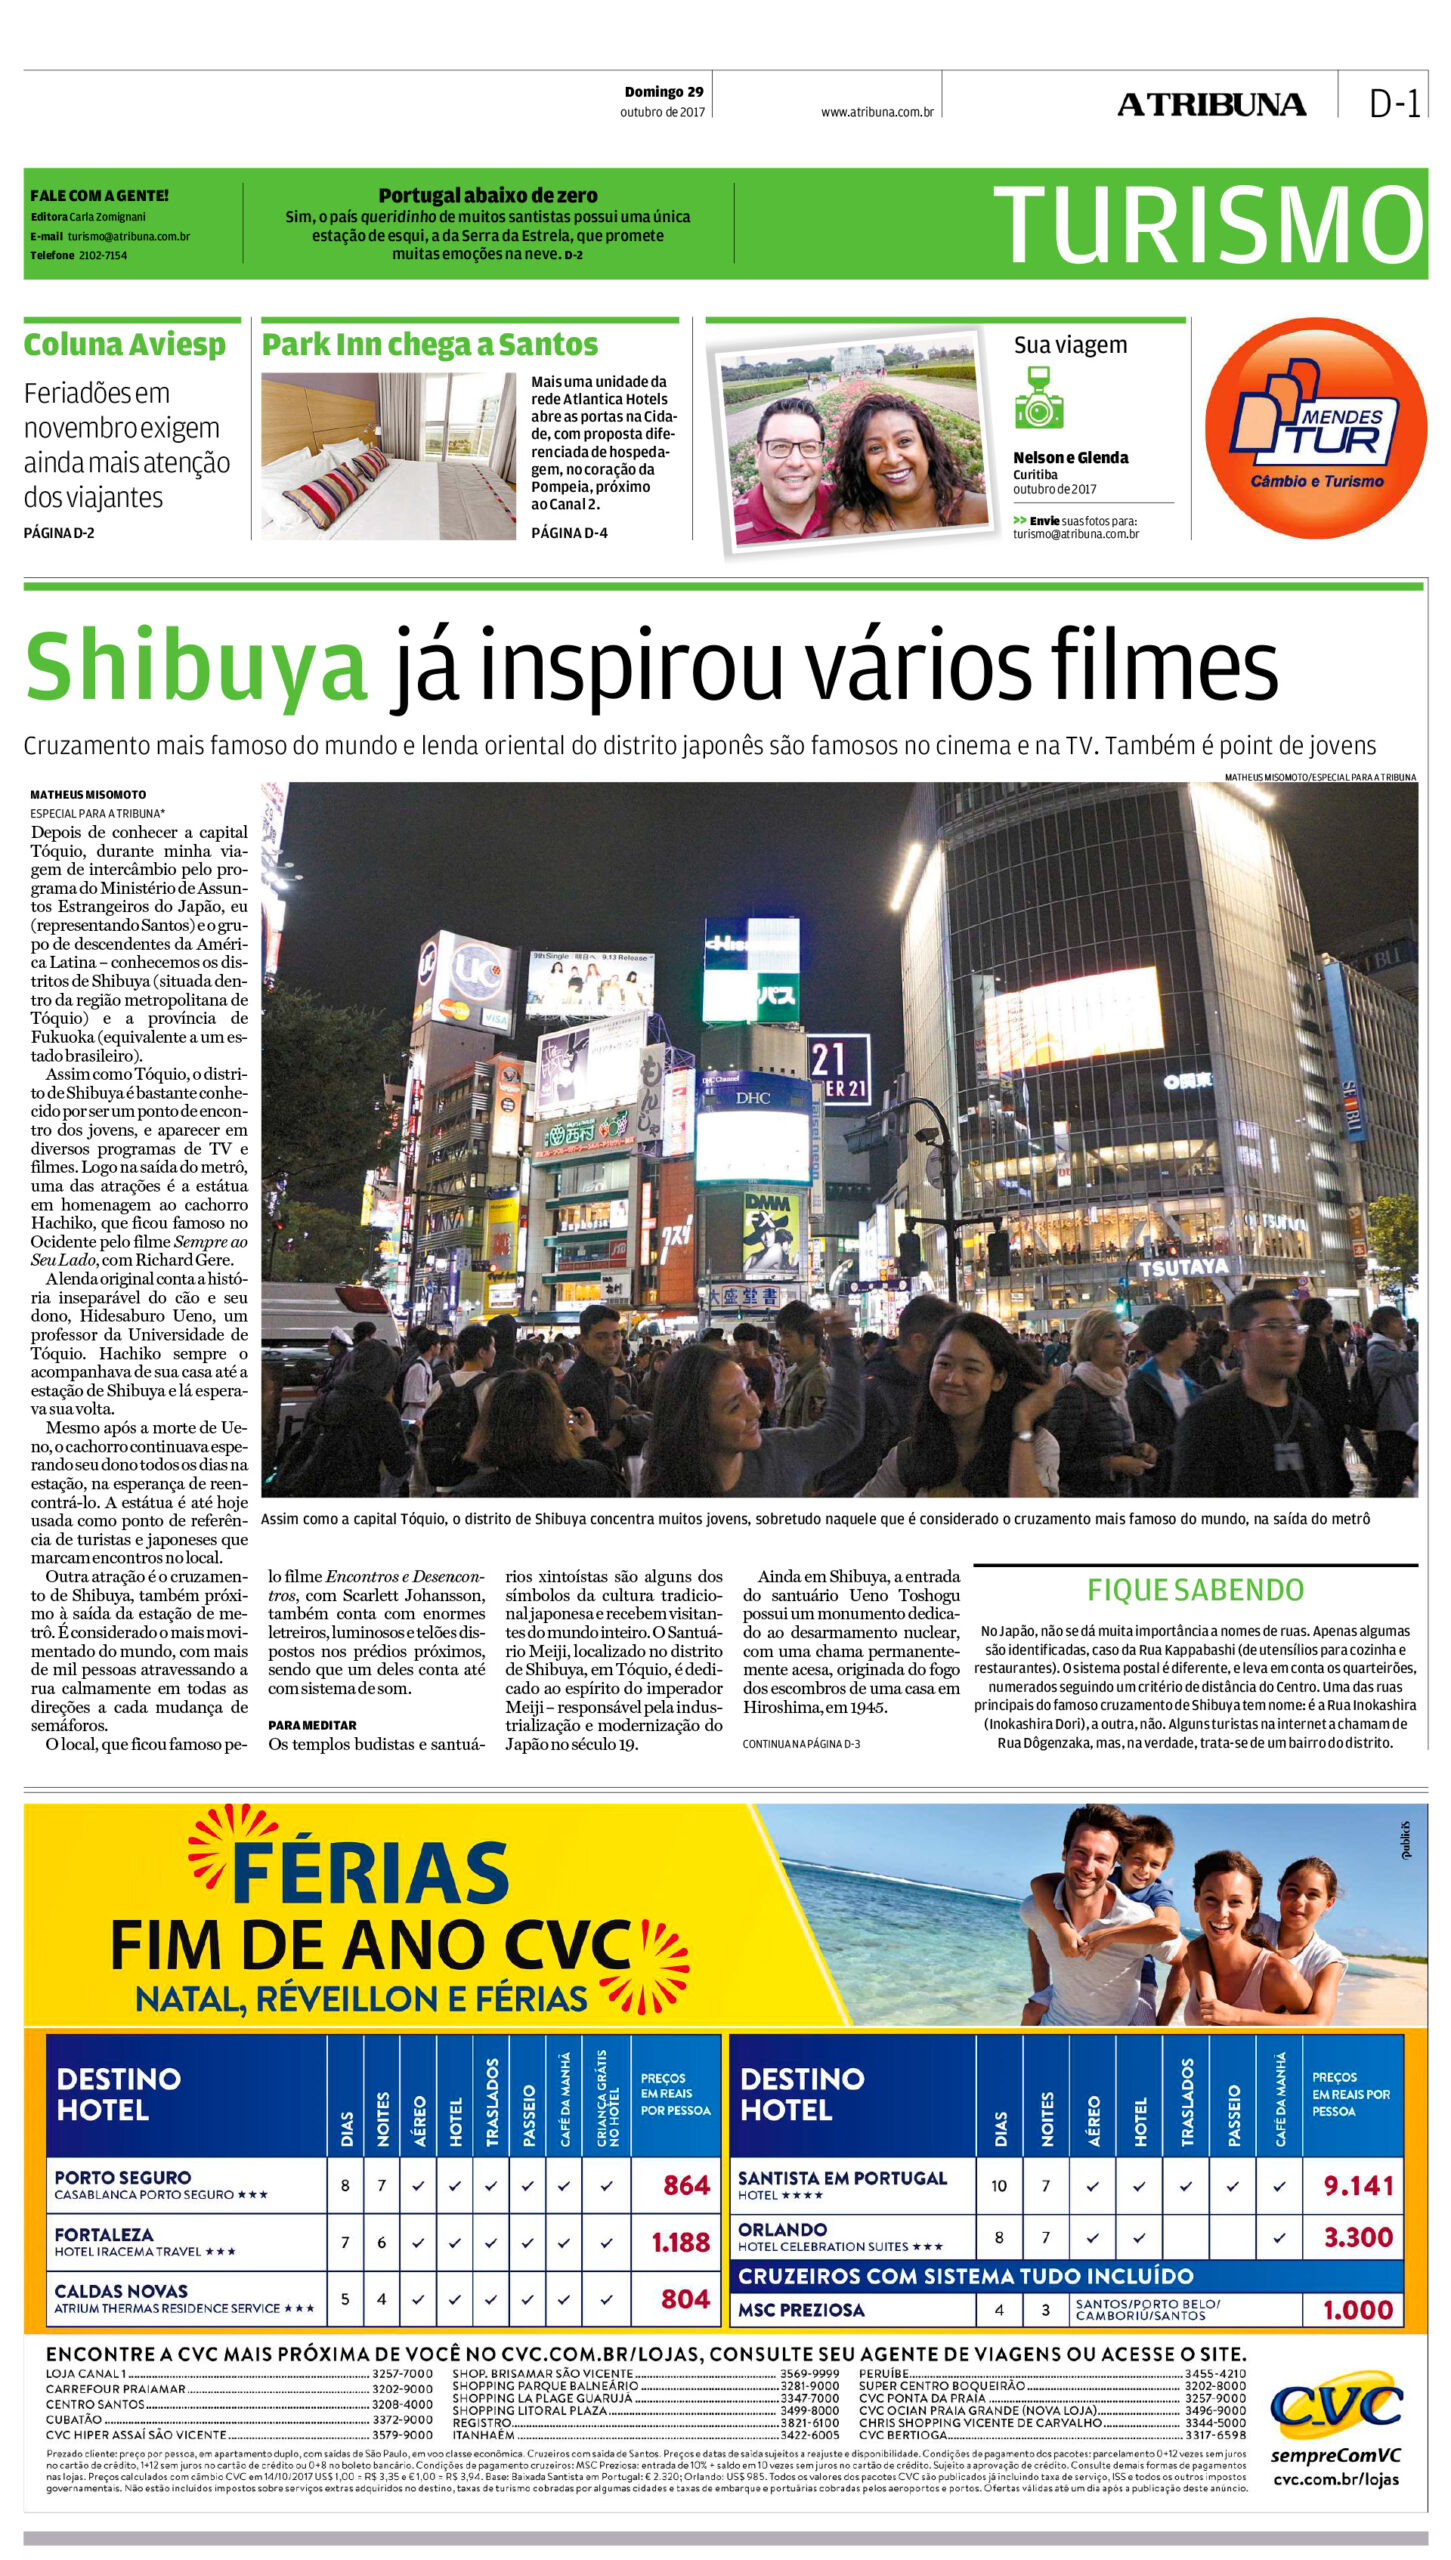 Shibuya já inspirou vários filmes